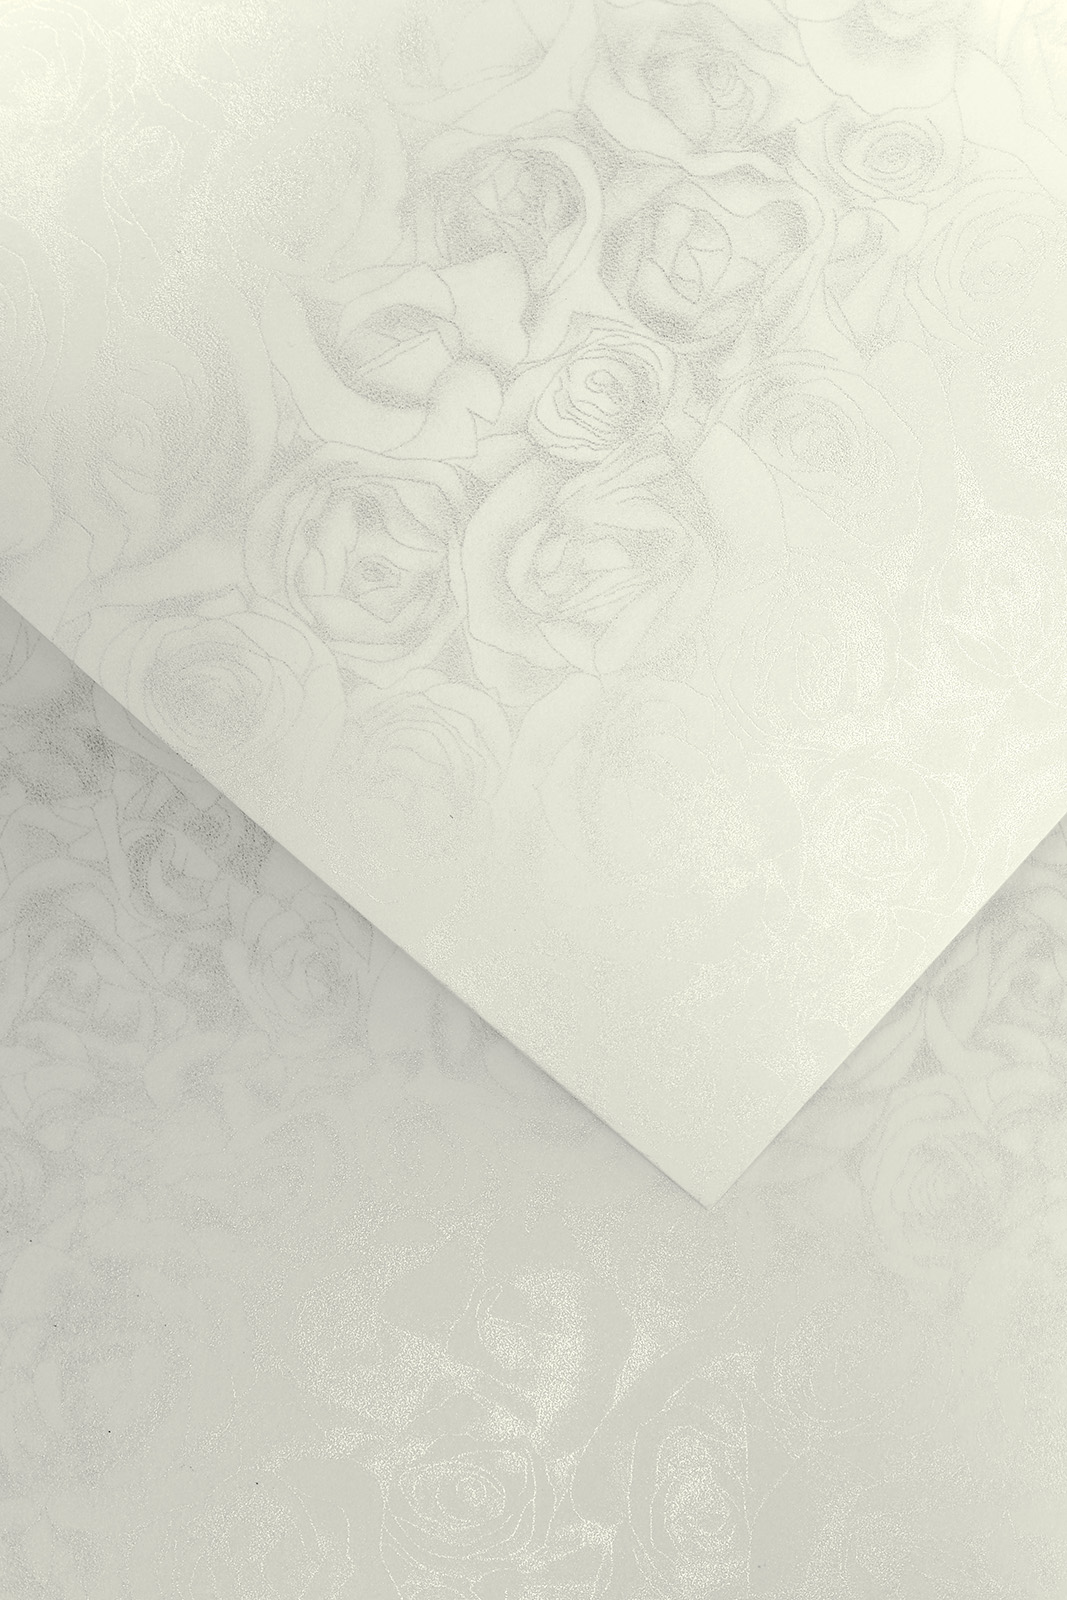 Decorative Premium card paper Roses